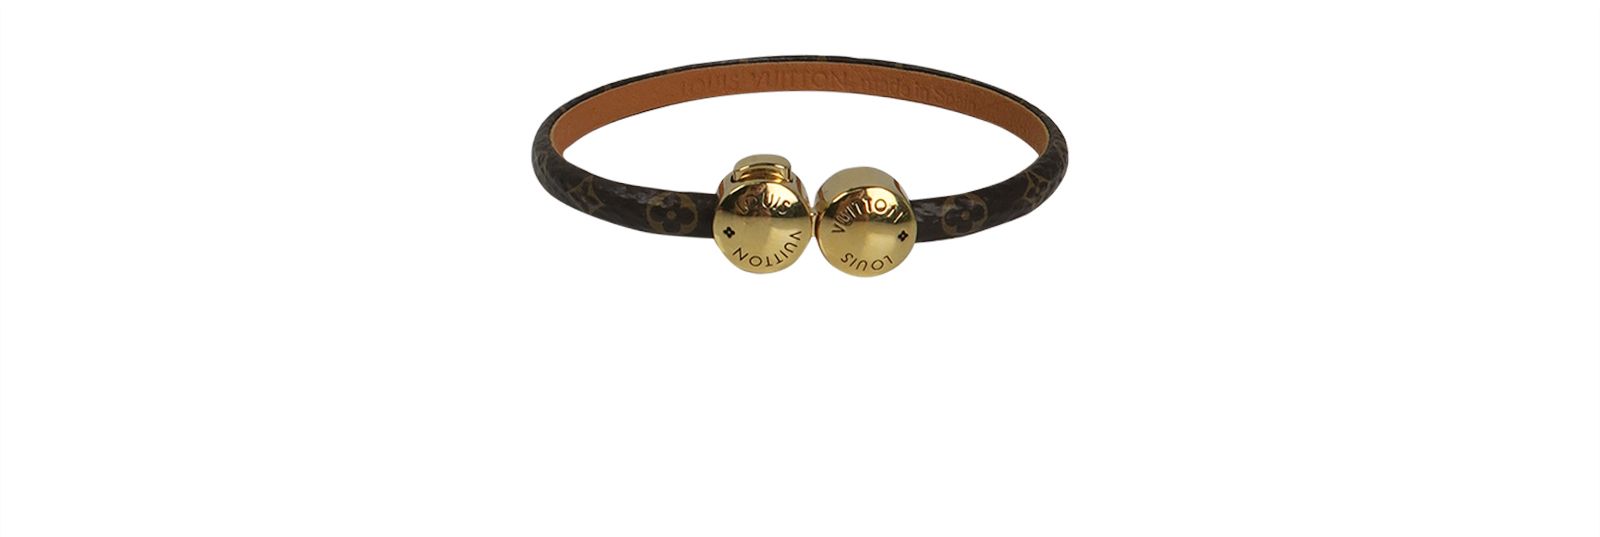 Louis Vuitton Historic Mini Bracelet, Bracelets - Designer Exchange